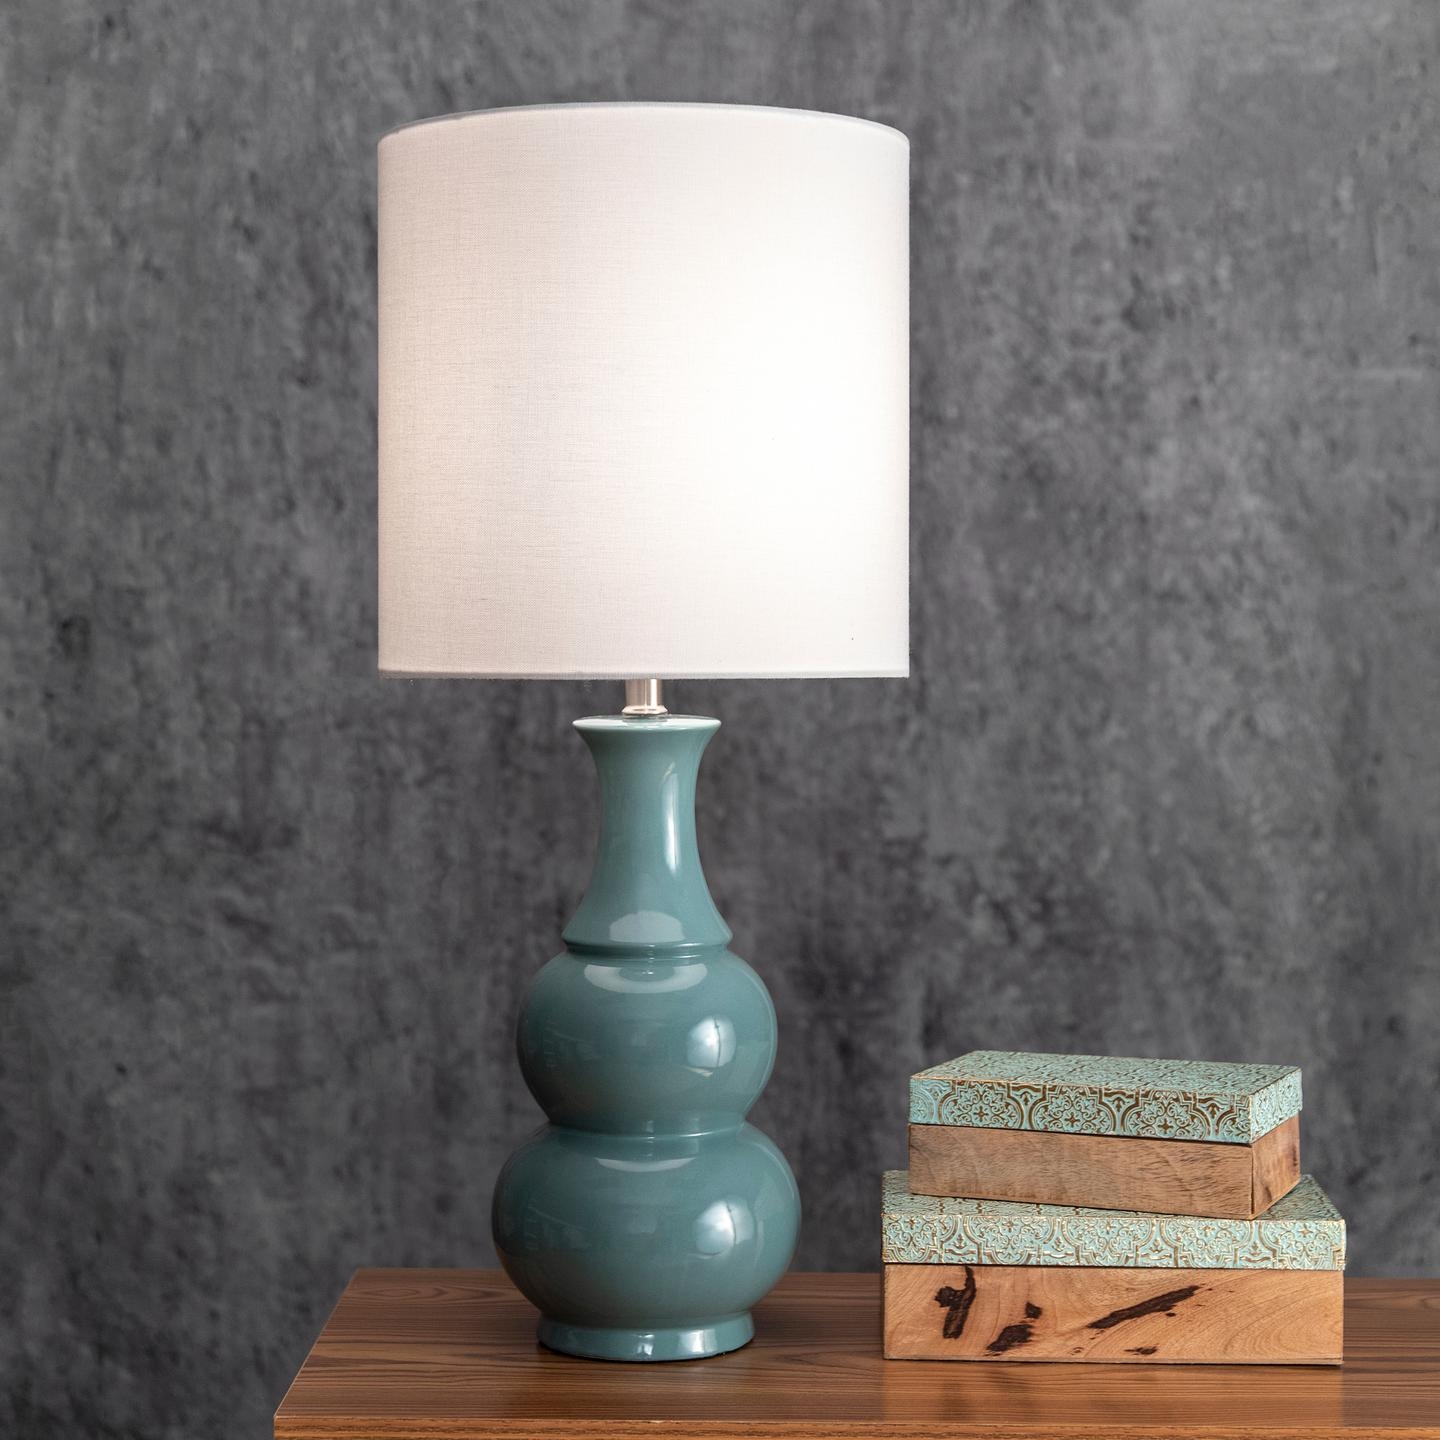 Indo 29" Ceramic Table Lamp - Image 1